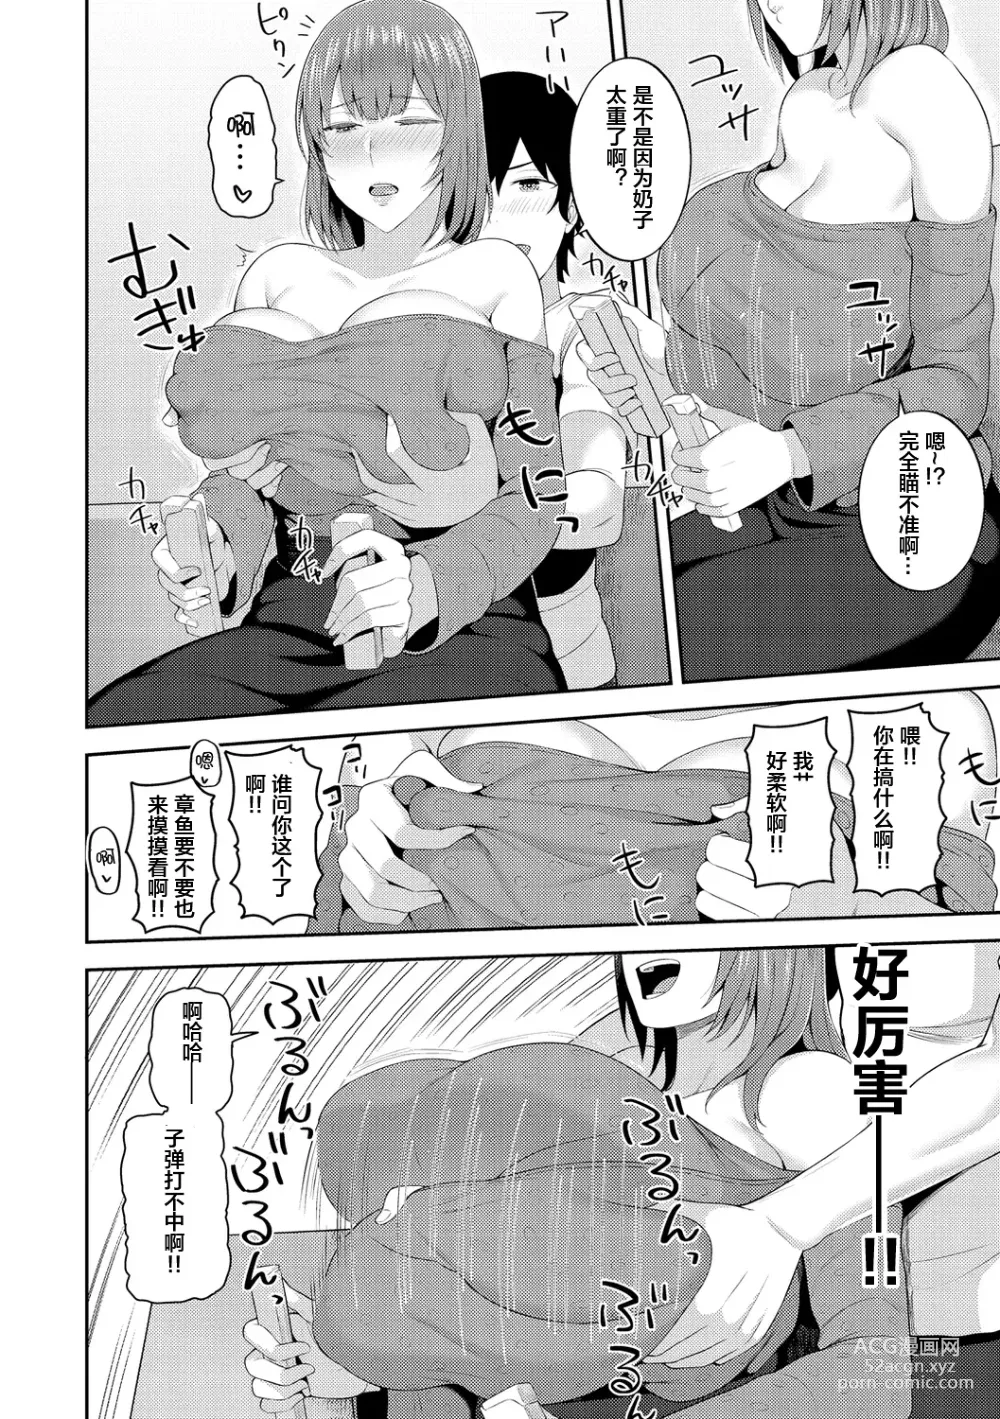 Page 141 of manga Amaete Hoshii no - I want you to spoil me